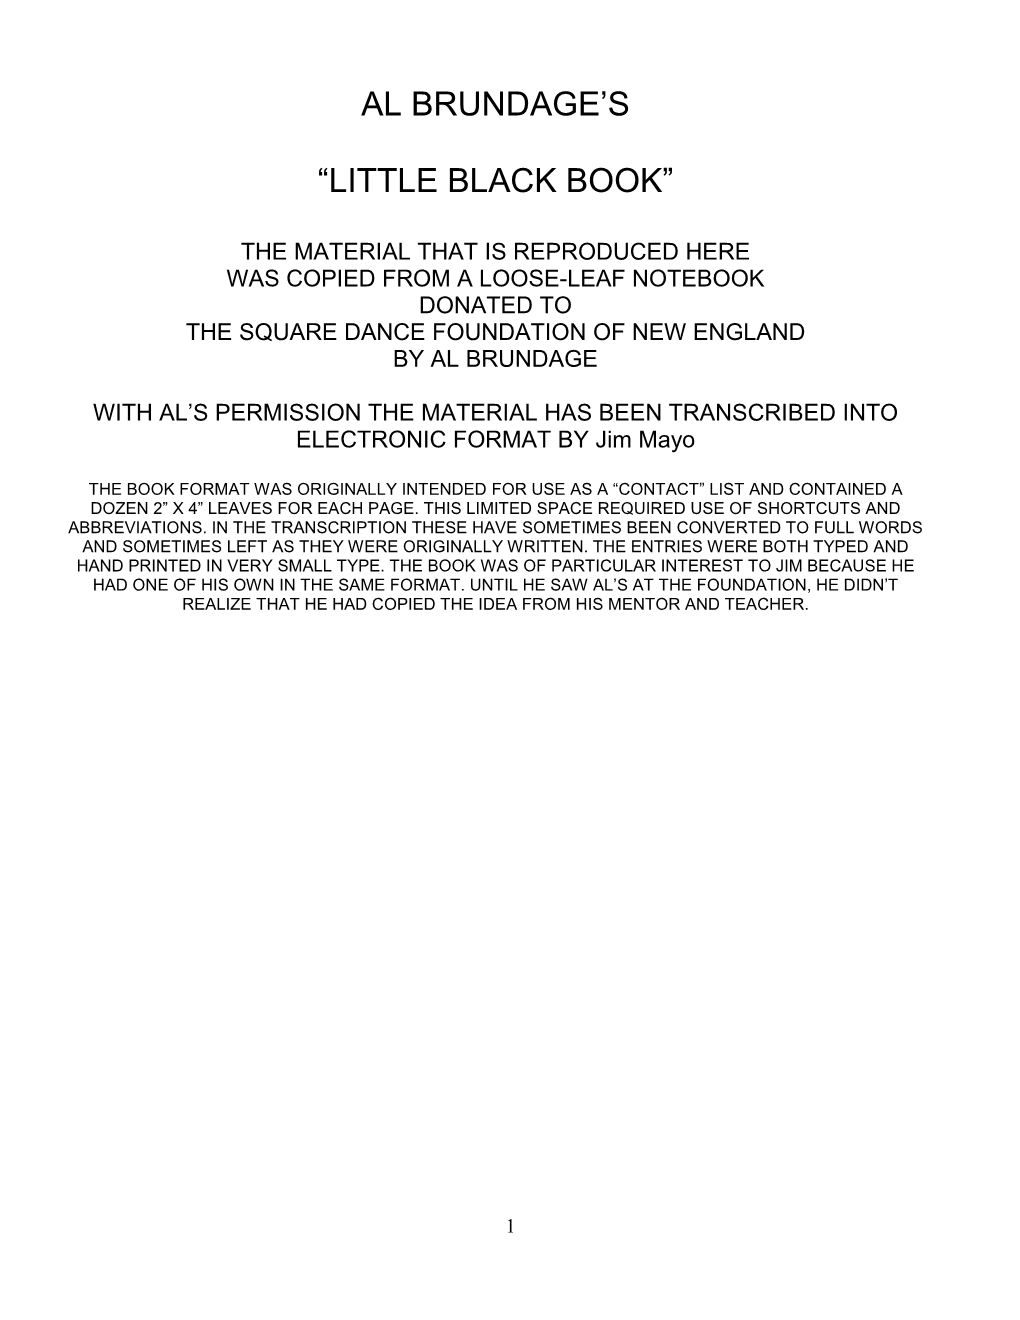 Al Brundage's “Little Black Book”